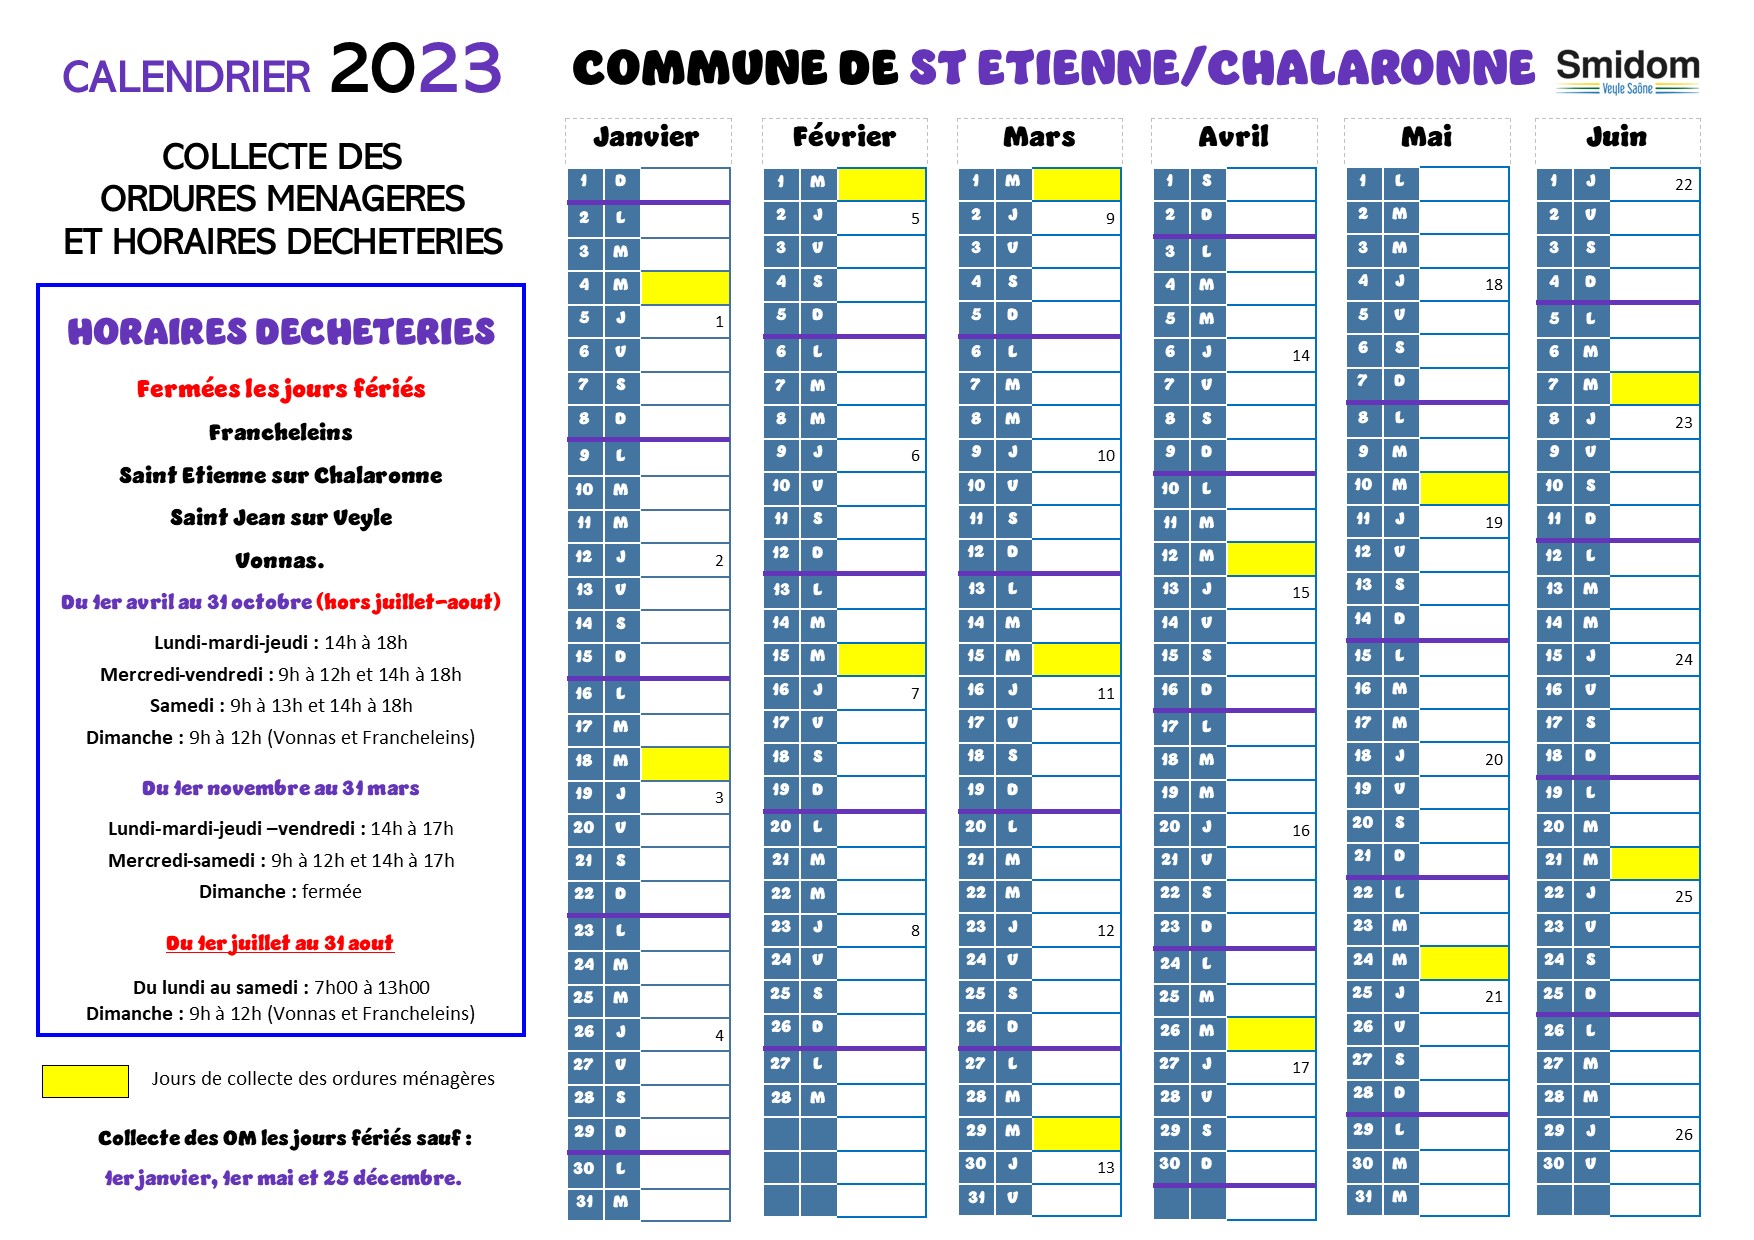 Saint Etienne sur Chalaronne Calendrier 2023.jpg